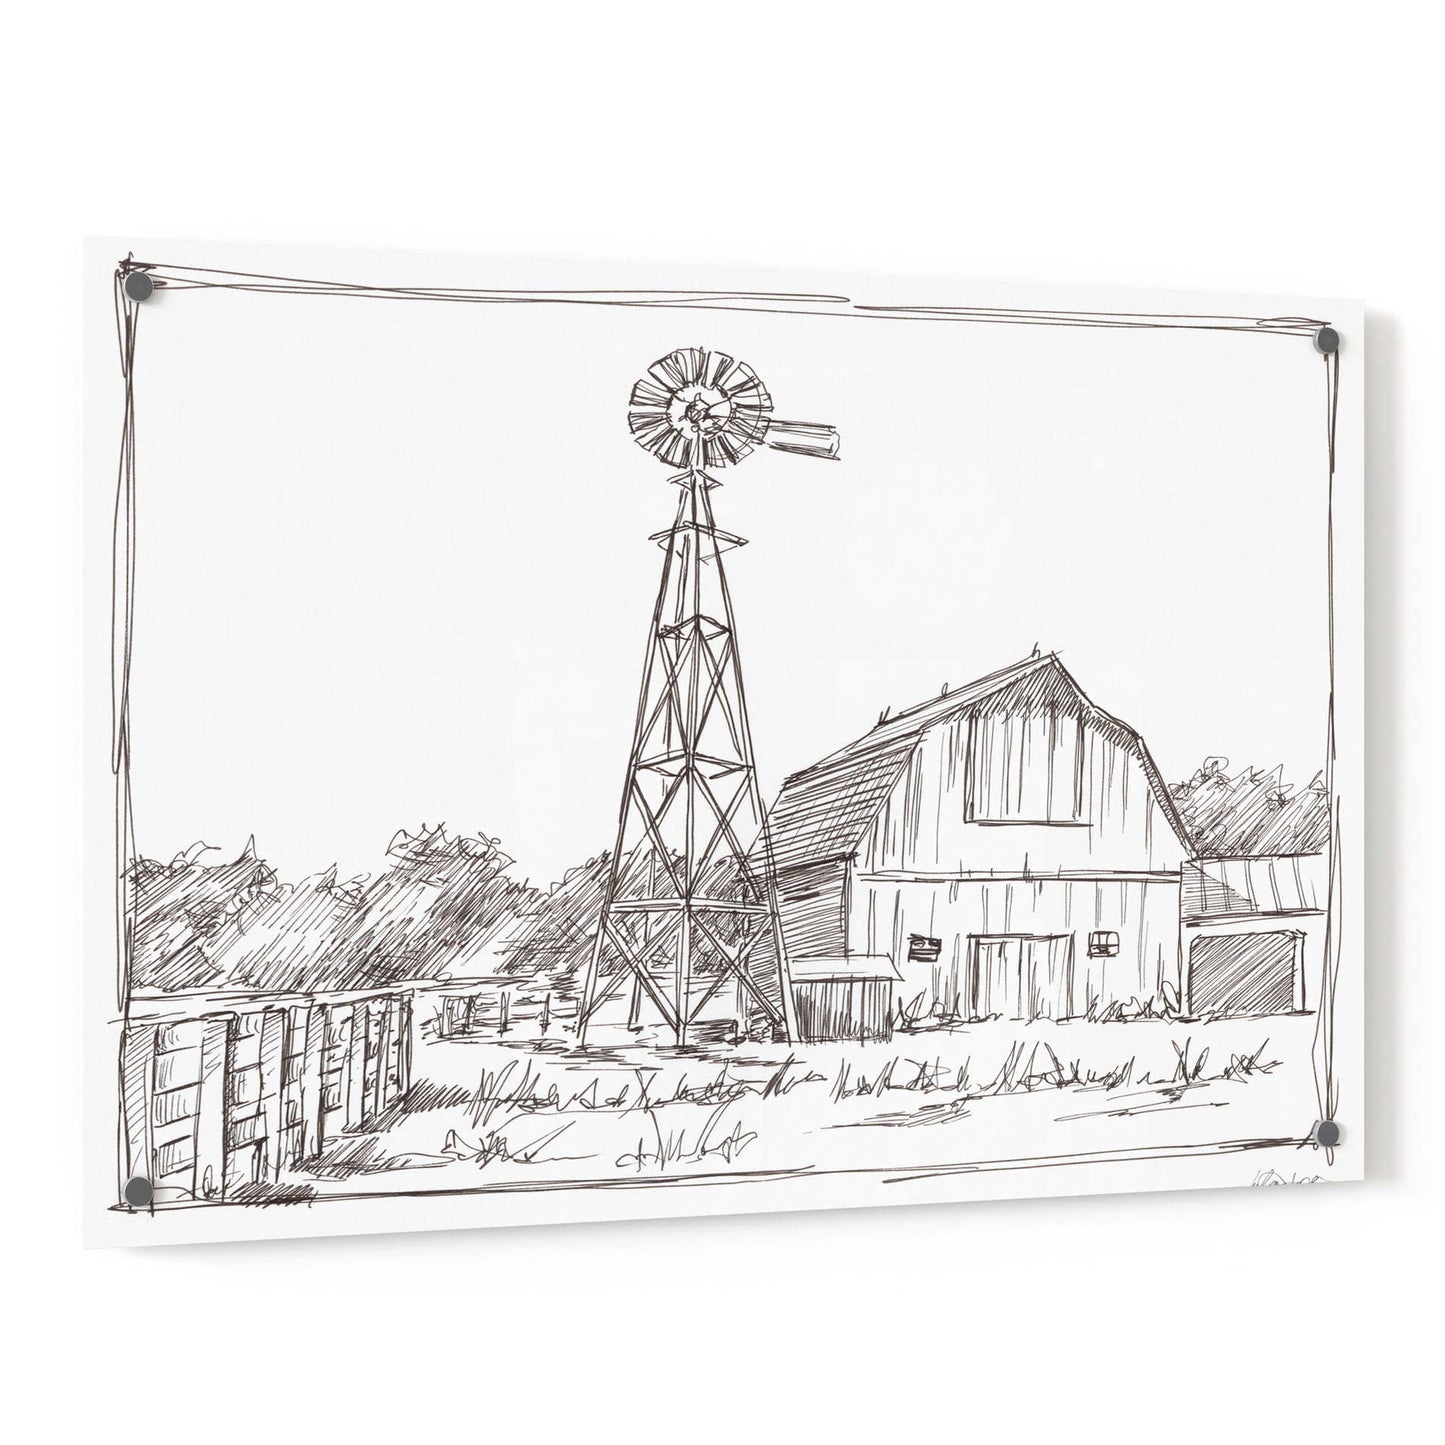 Epic Art 'Farm Sketch II' by Ethan Harper, Acrylic Glass Wall Art,36x24